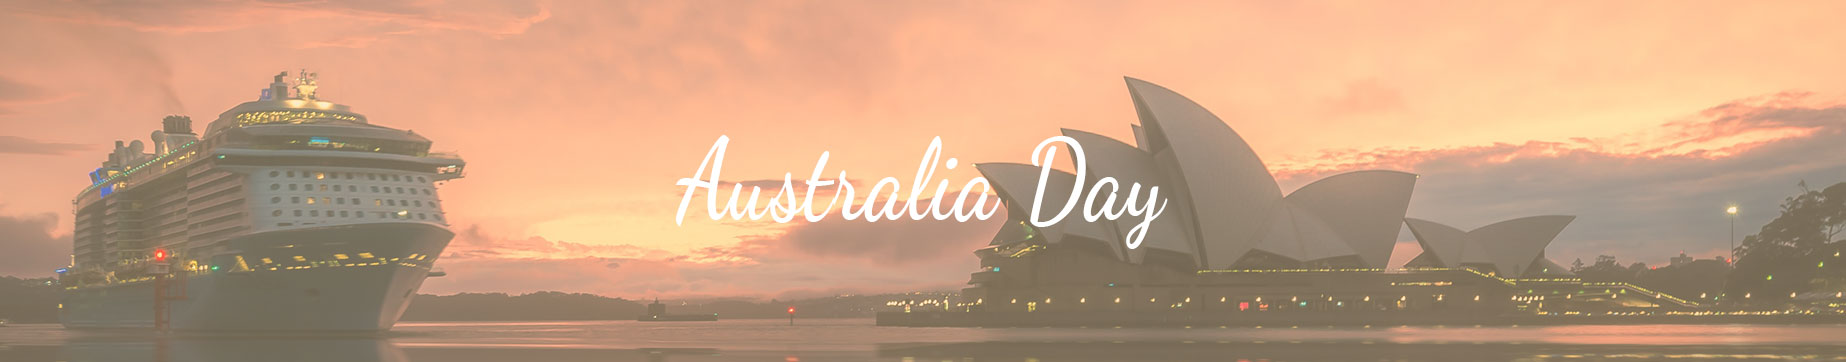 Celebrations Australia Day Under $100